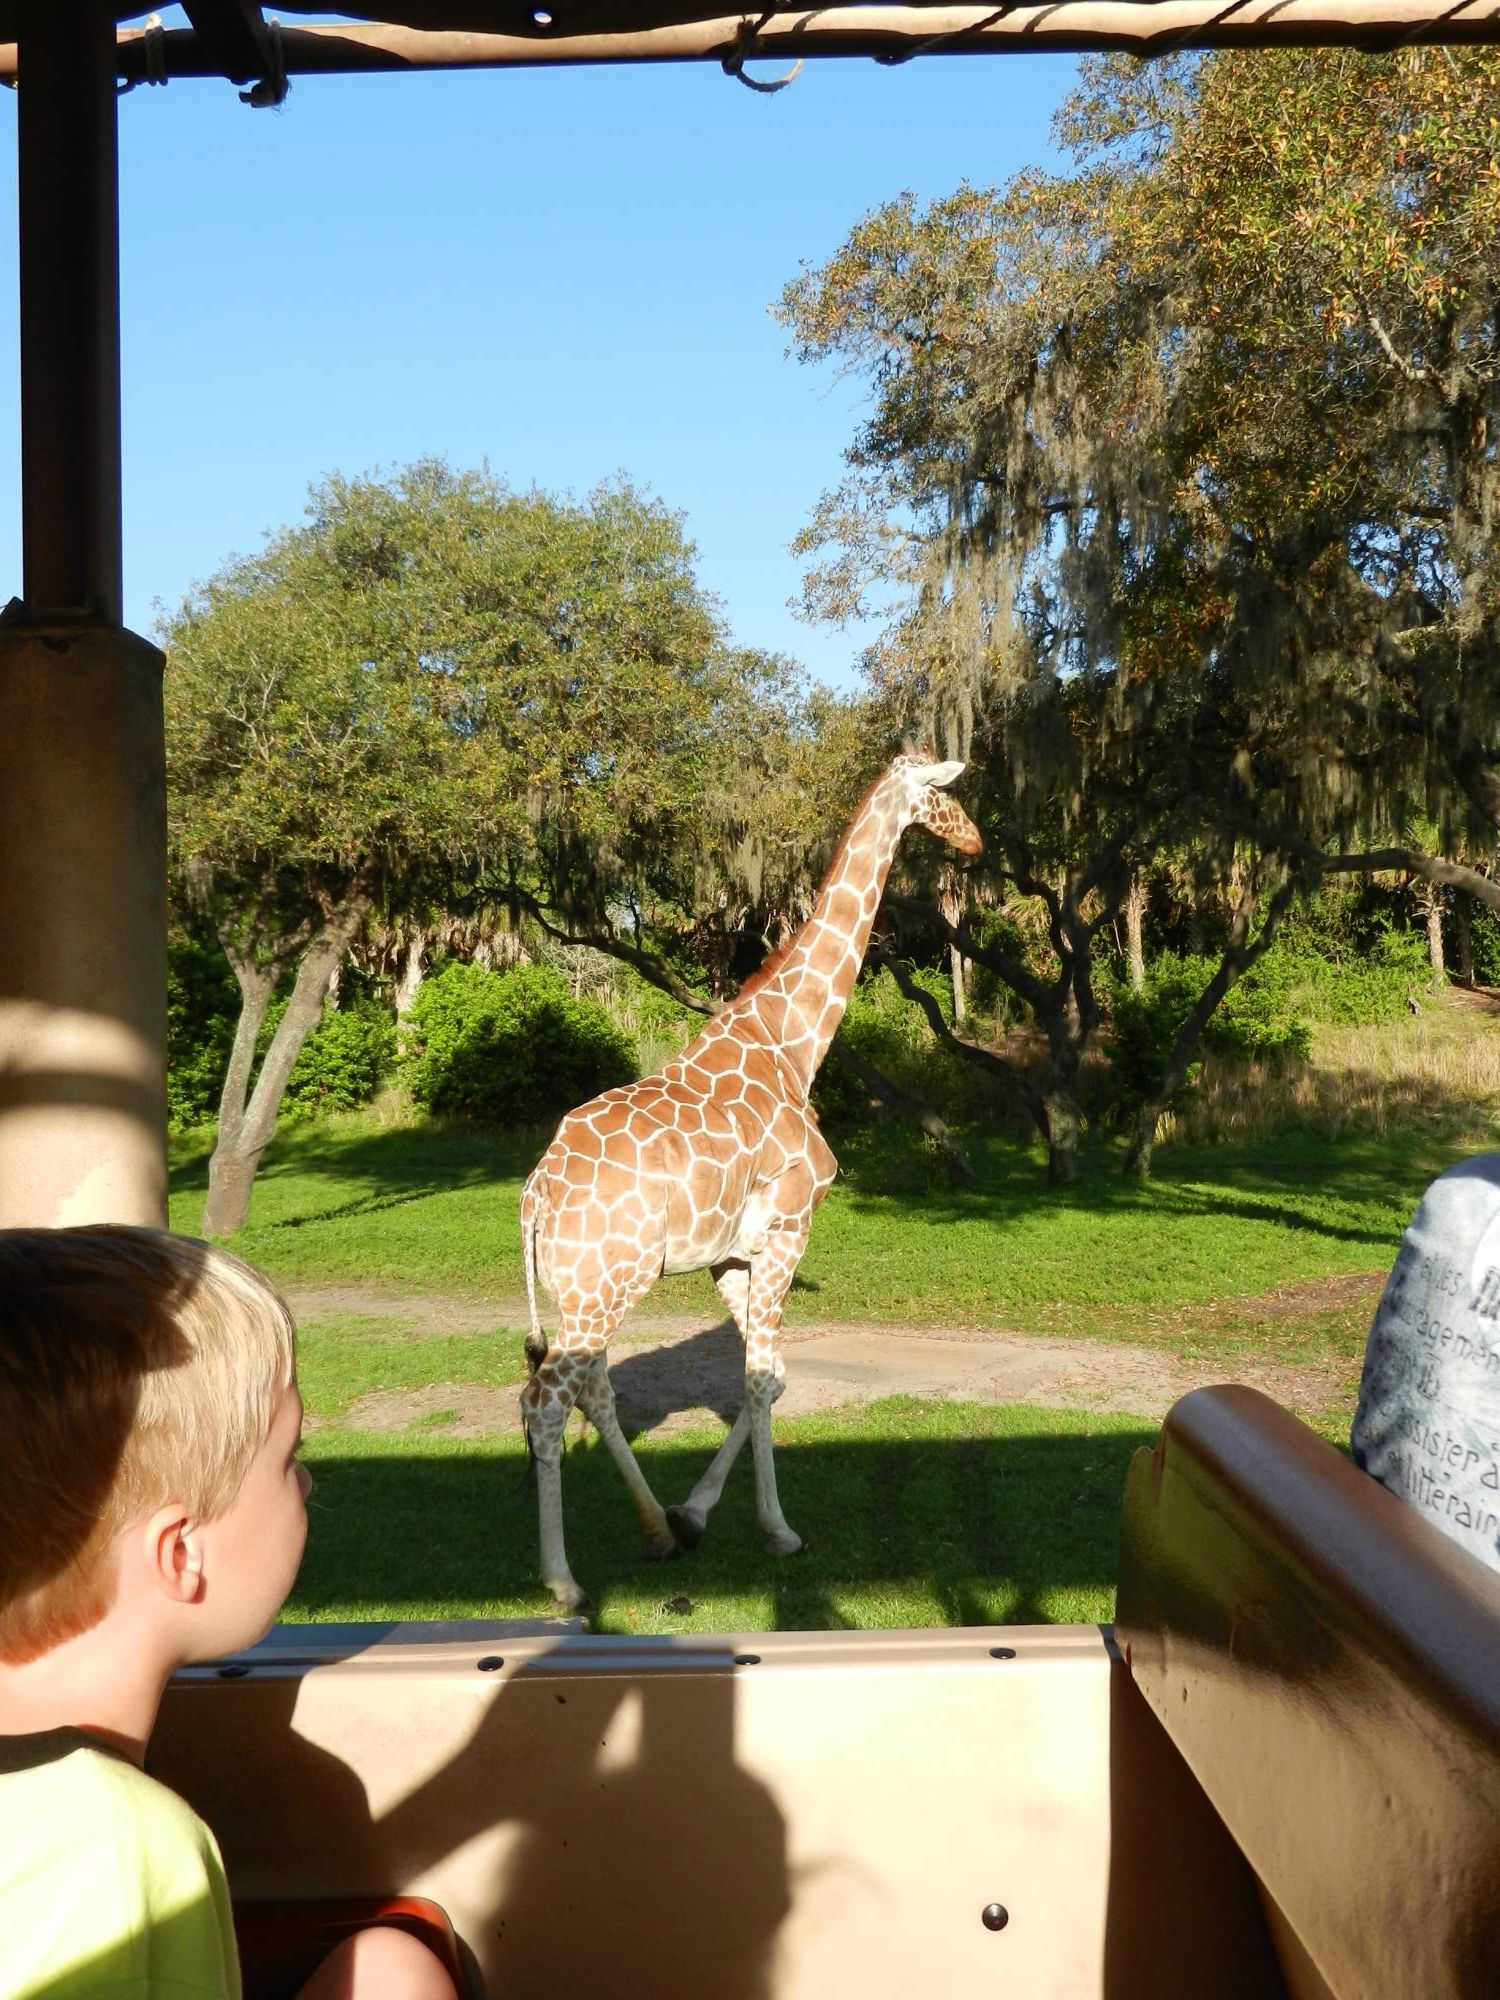 Looking at the Giraffe